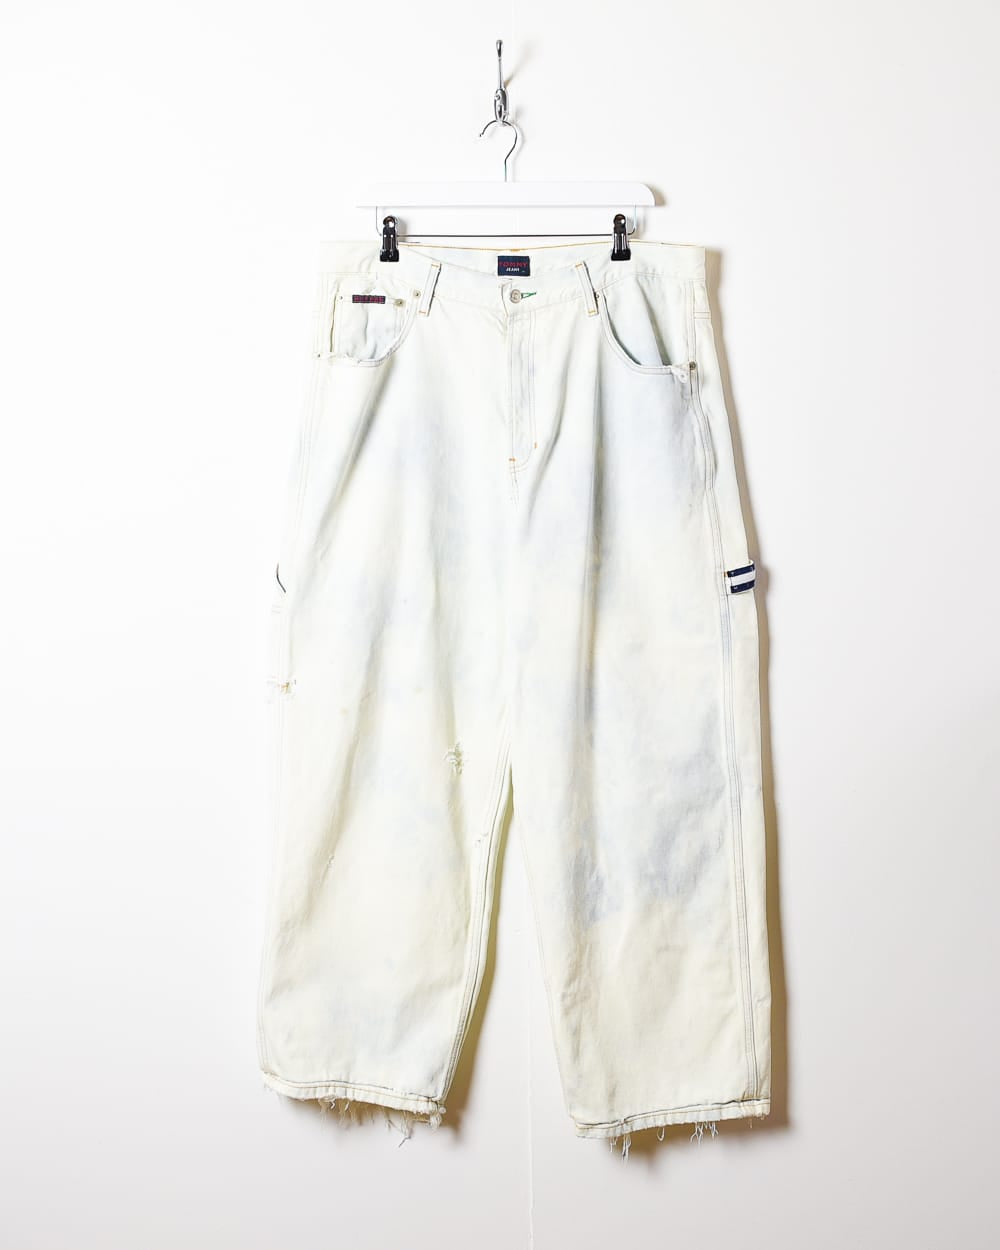 Carpenter Jeans – Domno Vintage